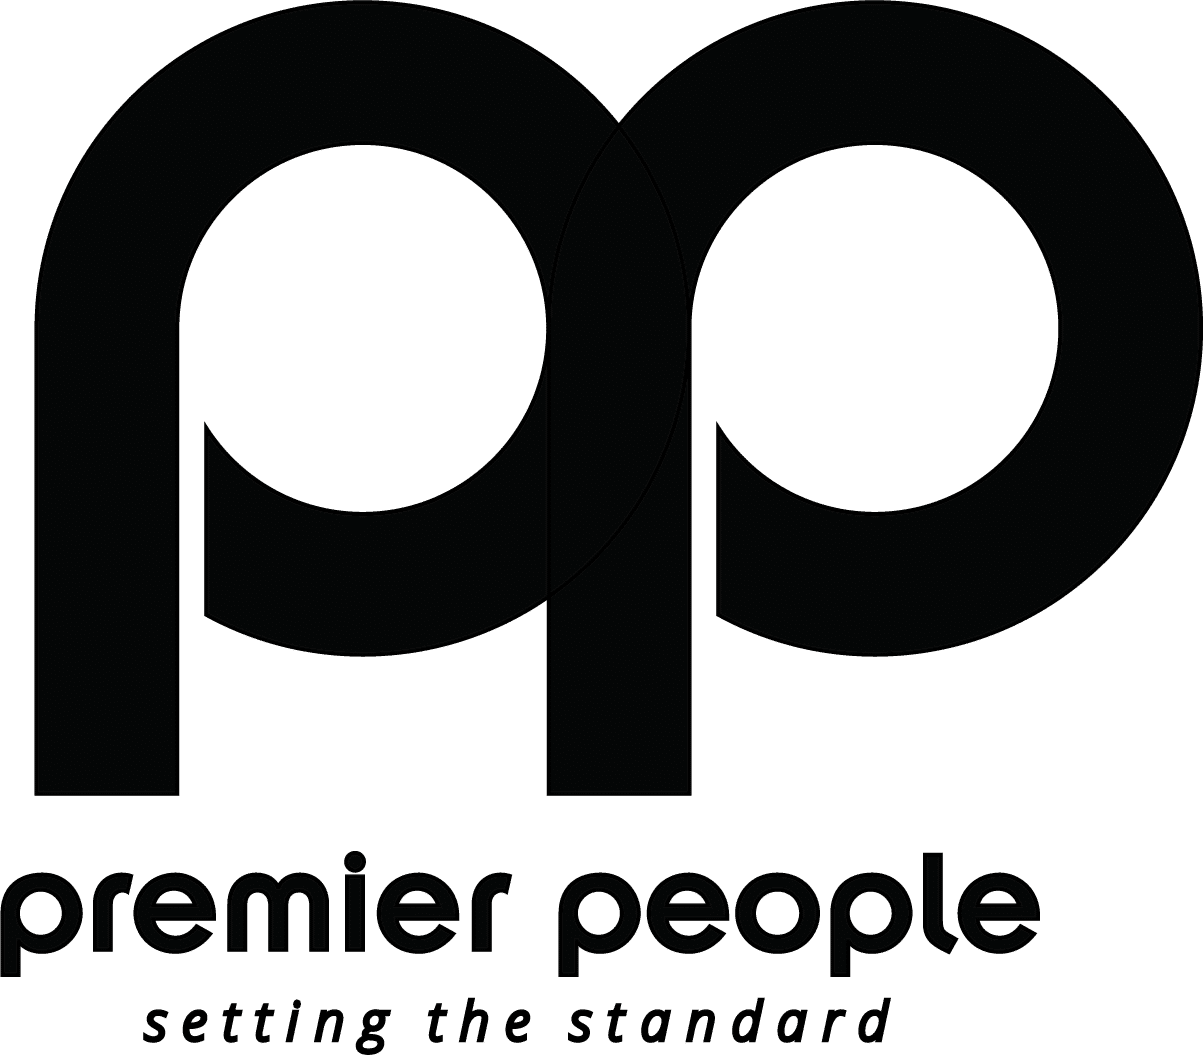 Premier People